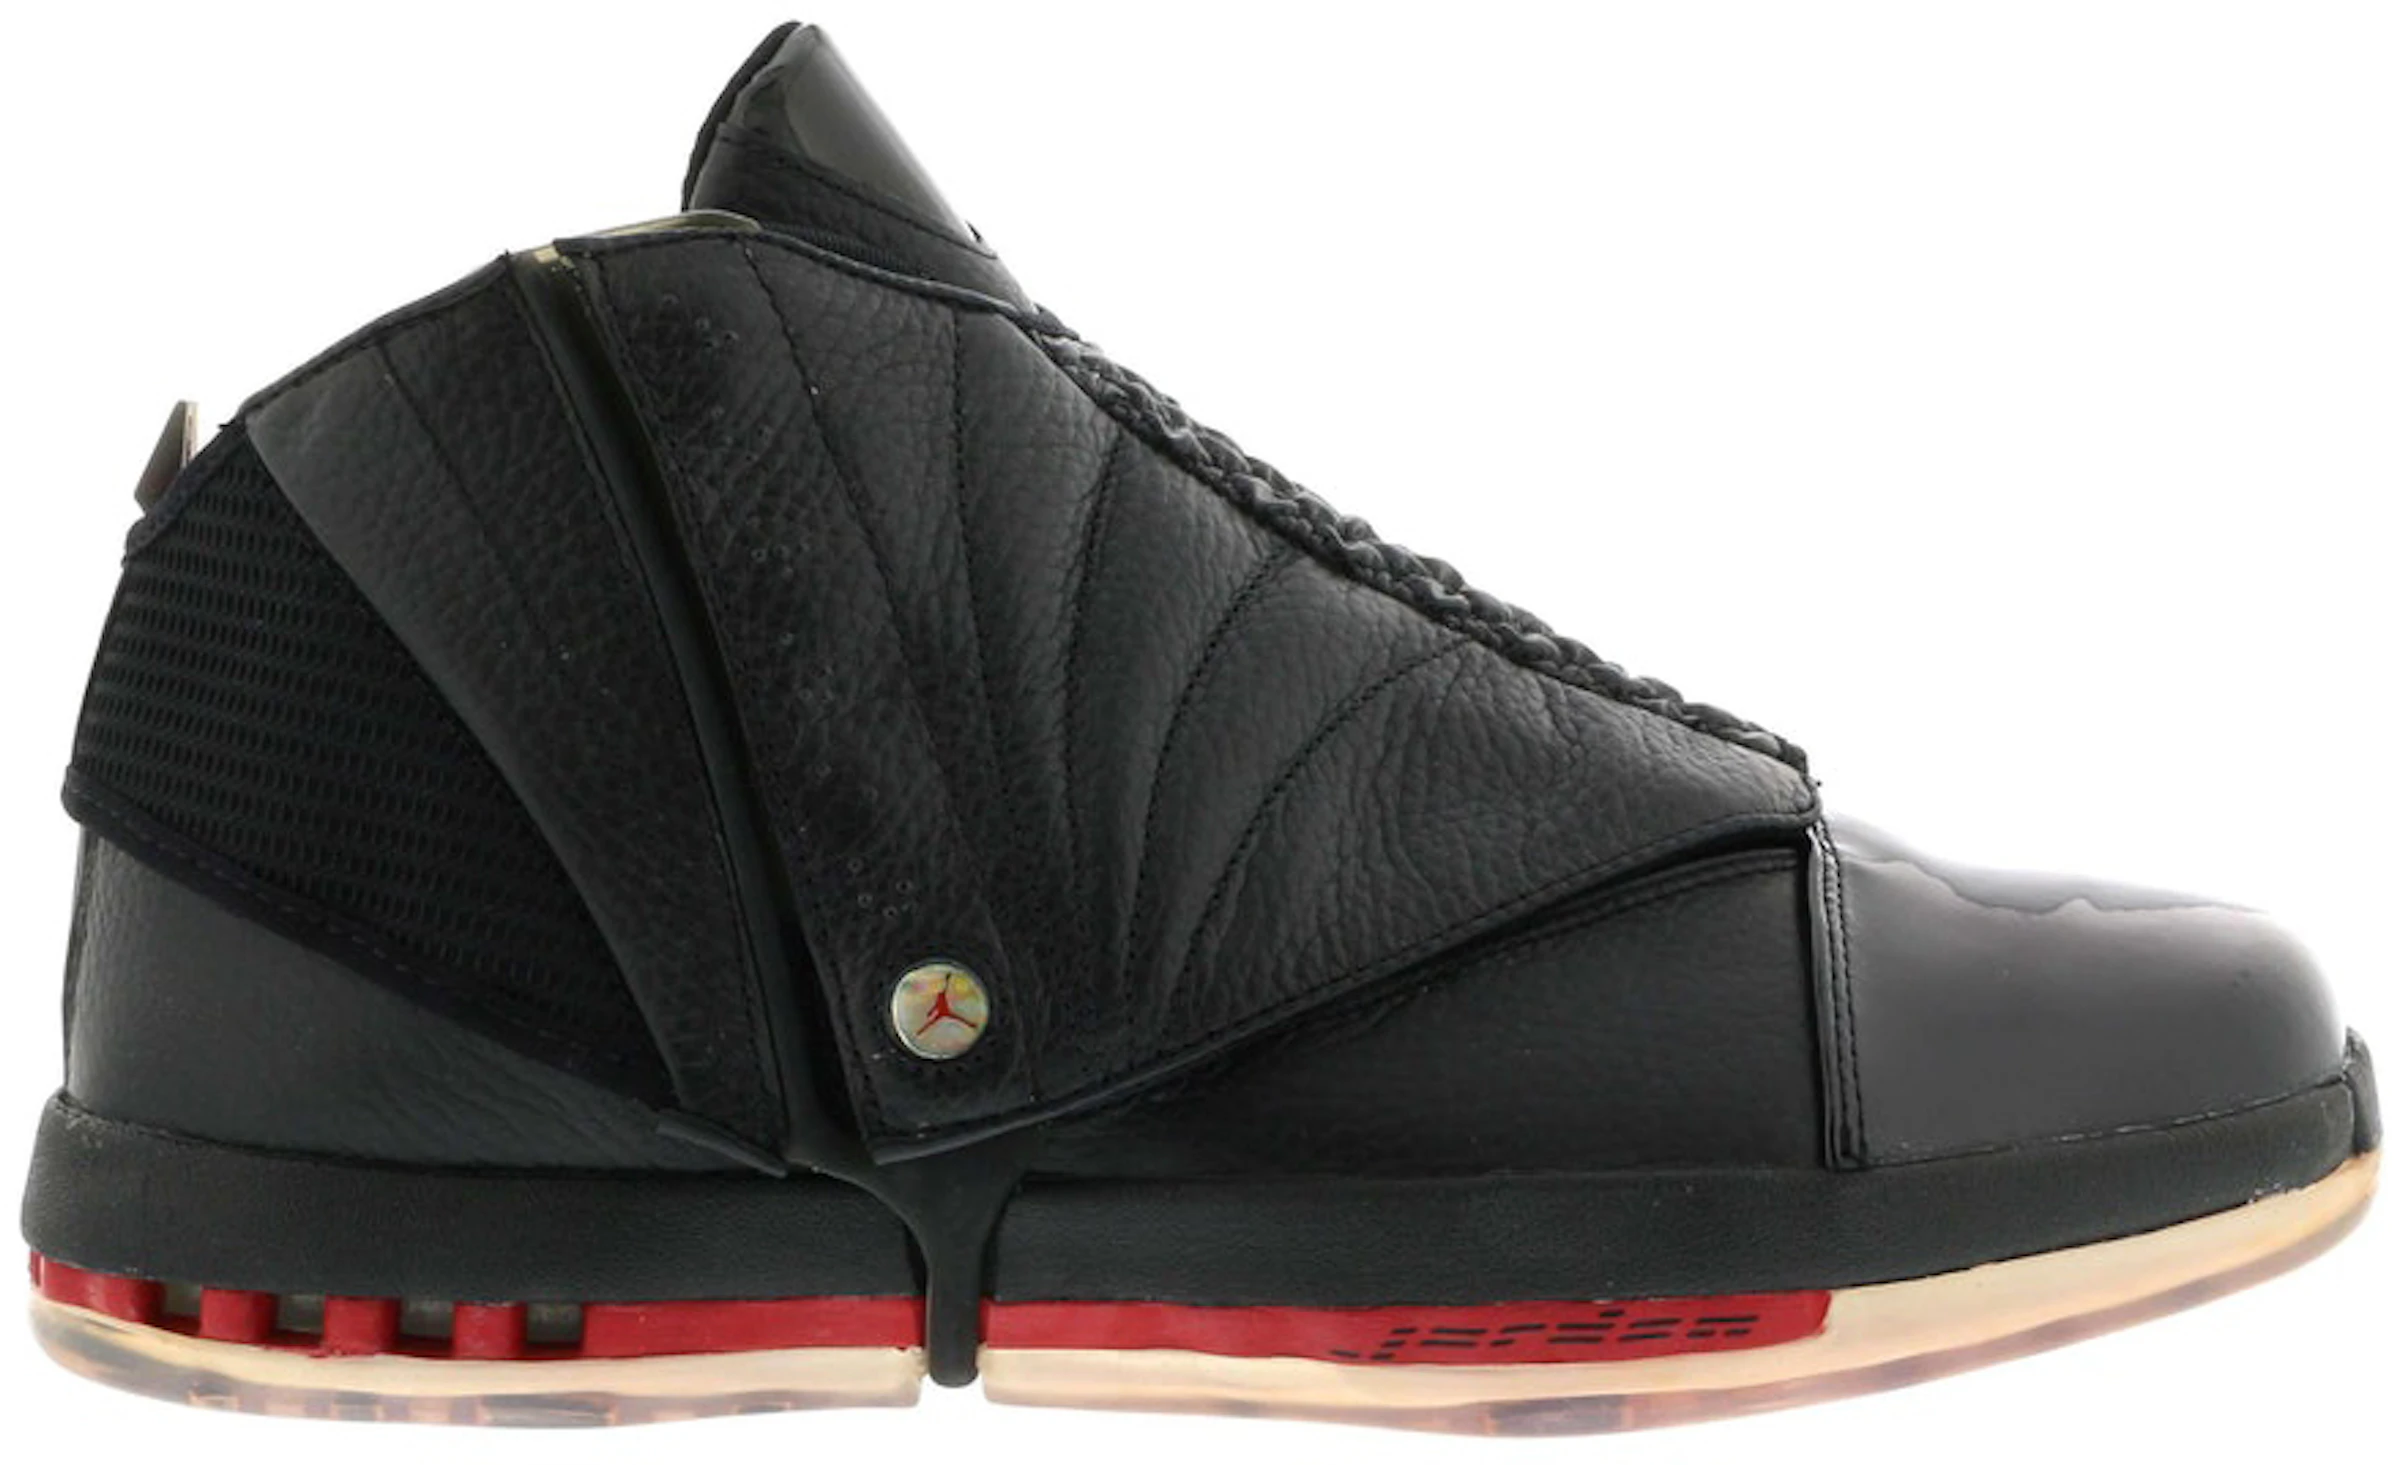 Compra Jordan 16 Calzado y sneakers nuevos StockX